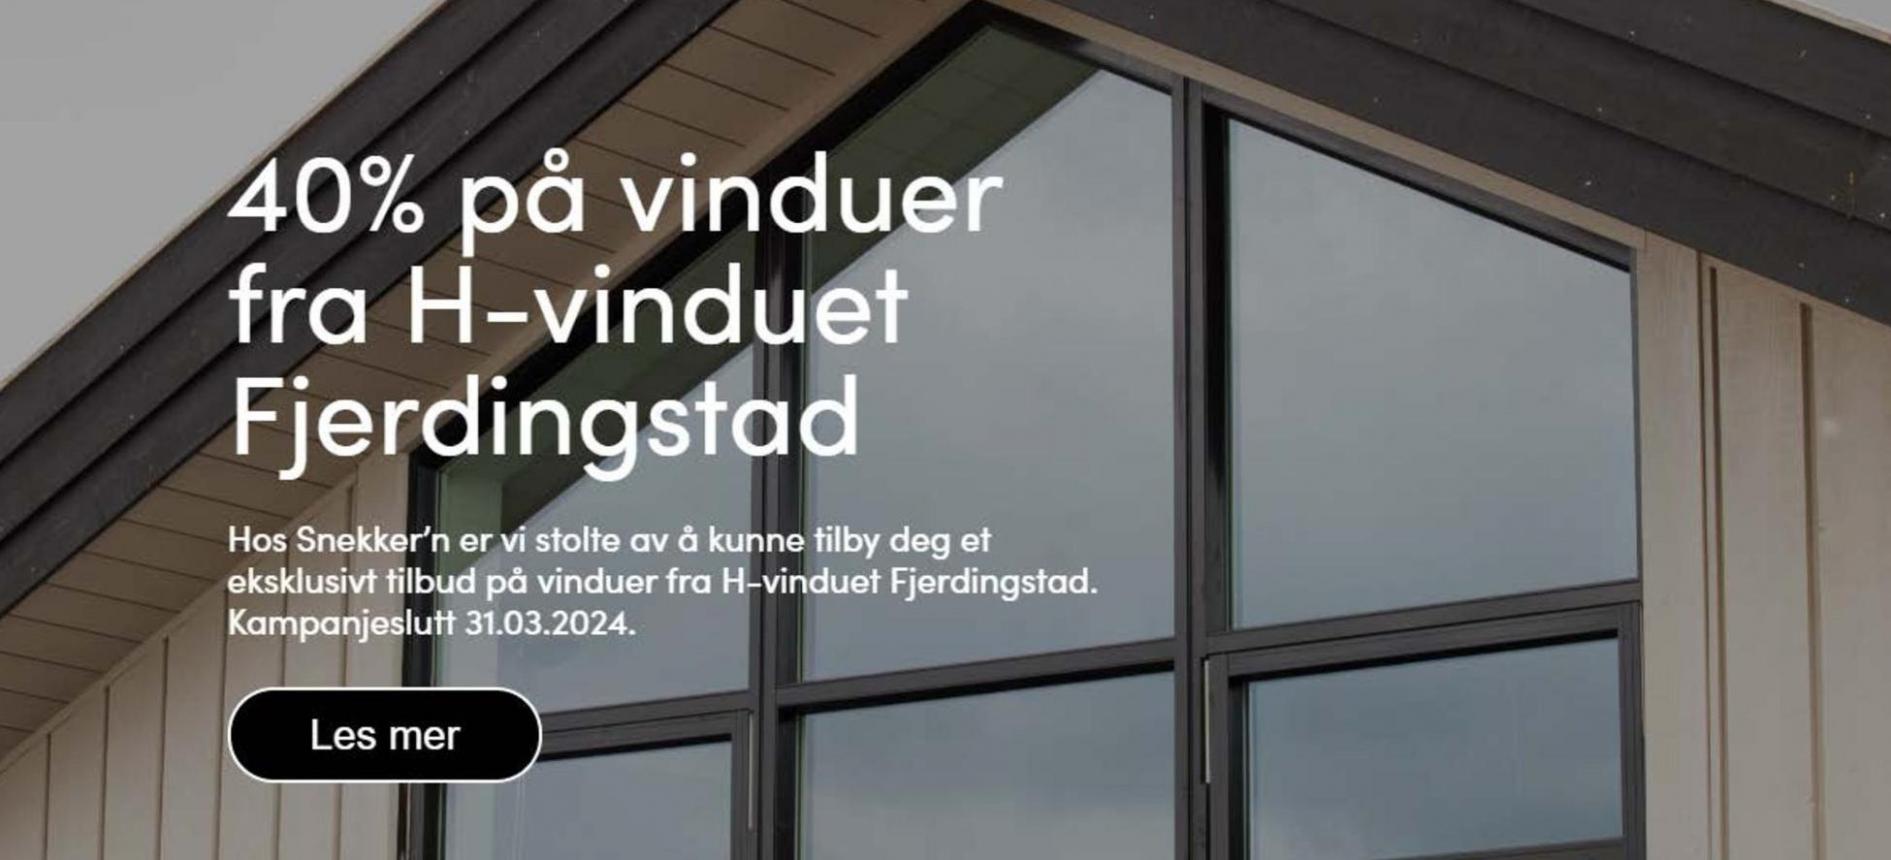 40% på vinduer fra H-vinduet Fjerdingstad. Snekker'n (2024-03-31-2024-03-31)